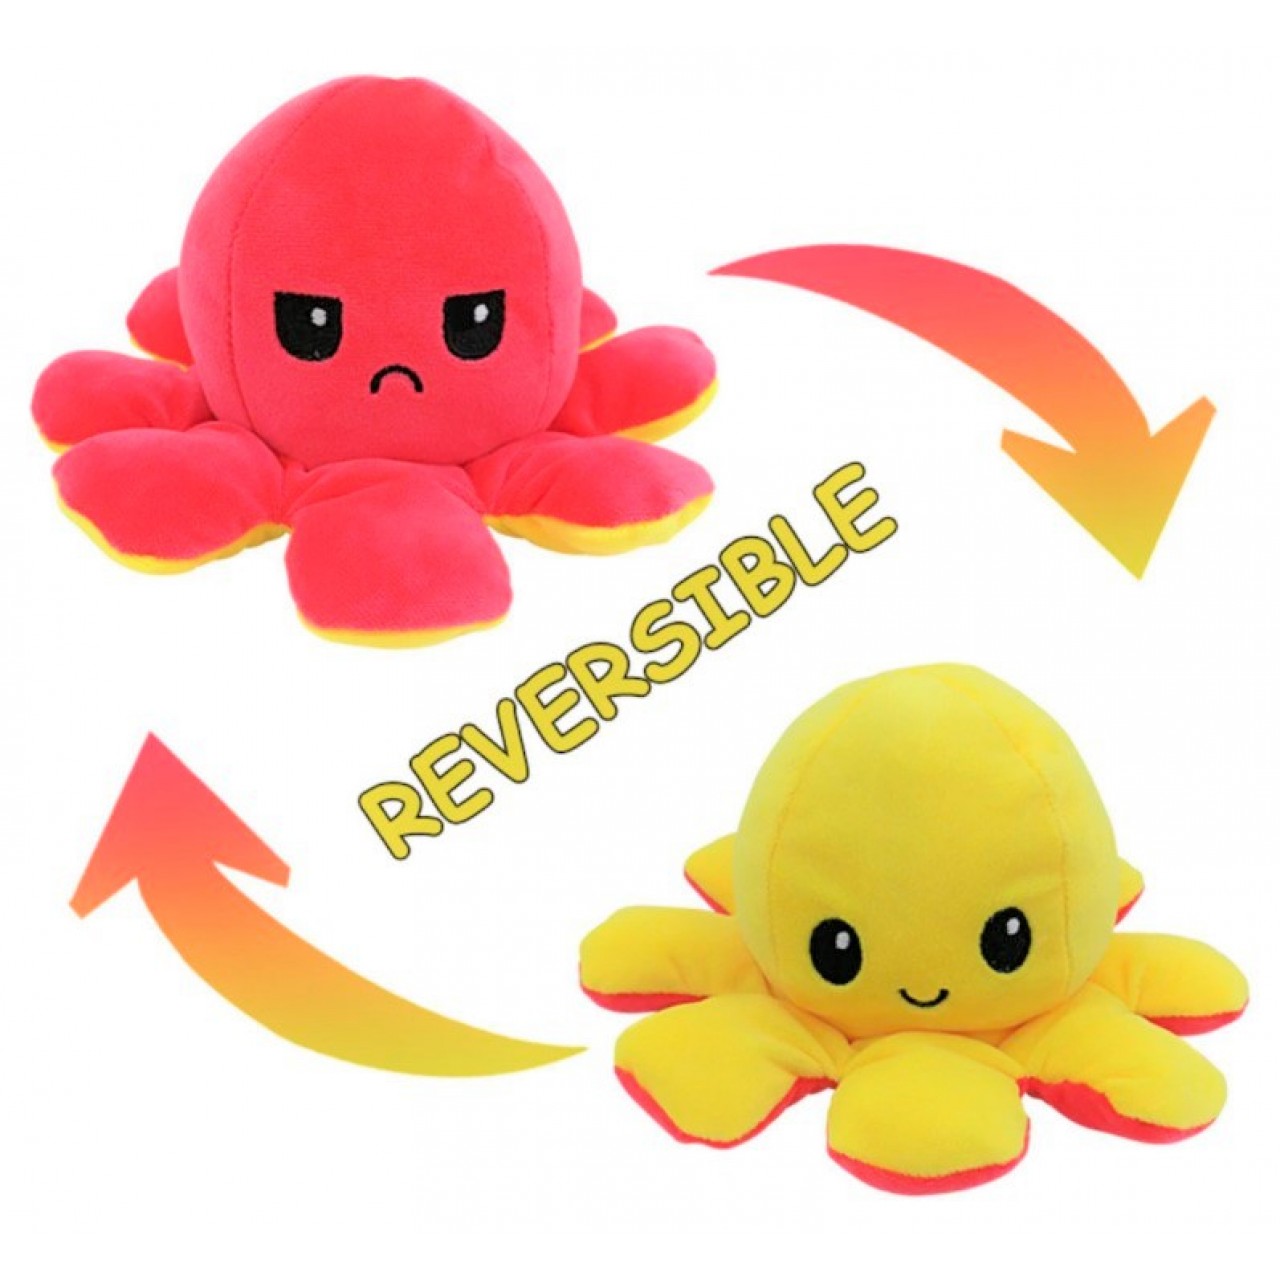 Χταπόδι διπλής όψης λούτρινο emotional reversible octopus plush 12 εκ - 5239 - Ροζ σκούρο / Κίτρινο